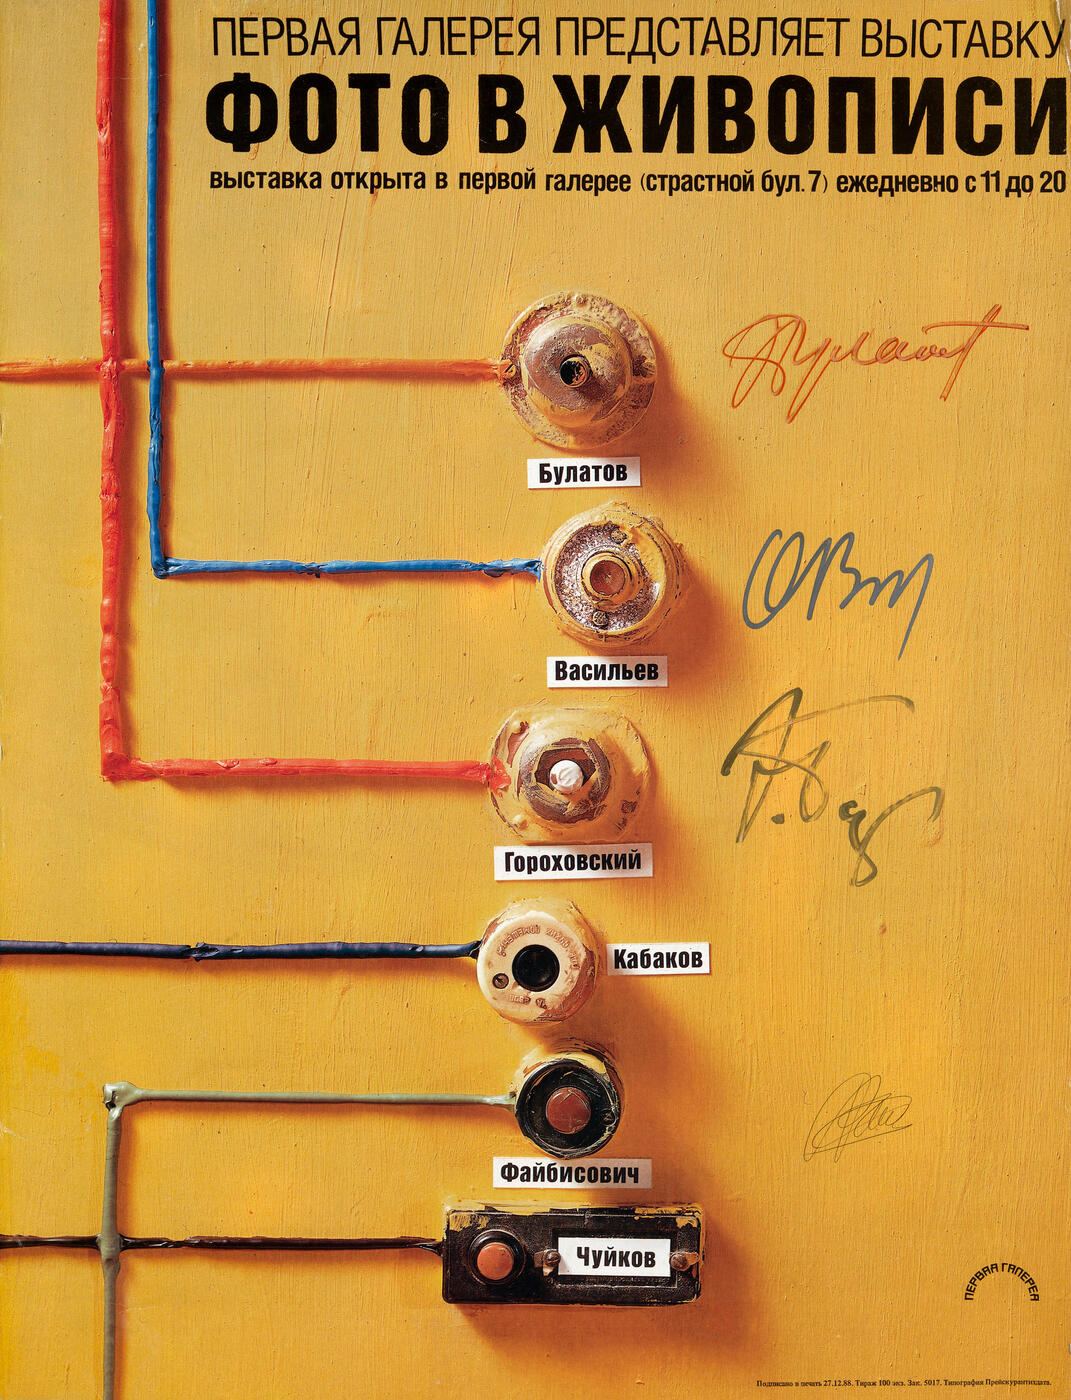 Poster from the Exhibition “Foto v zhivopisi”,   Pervaya Galereya, Moscow, 1989